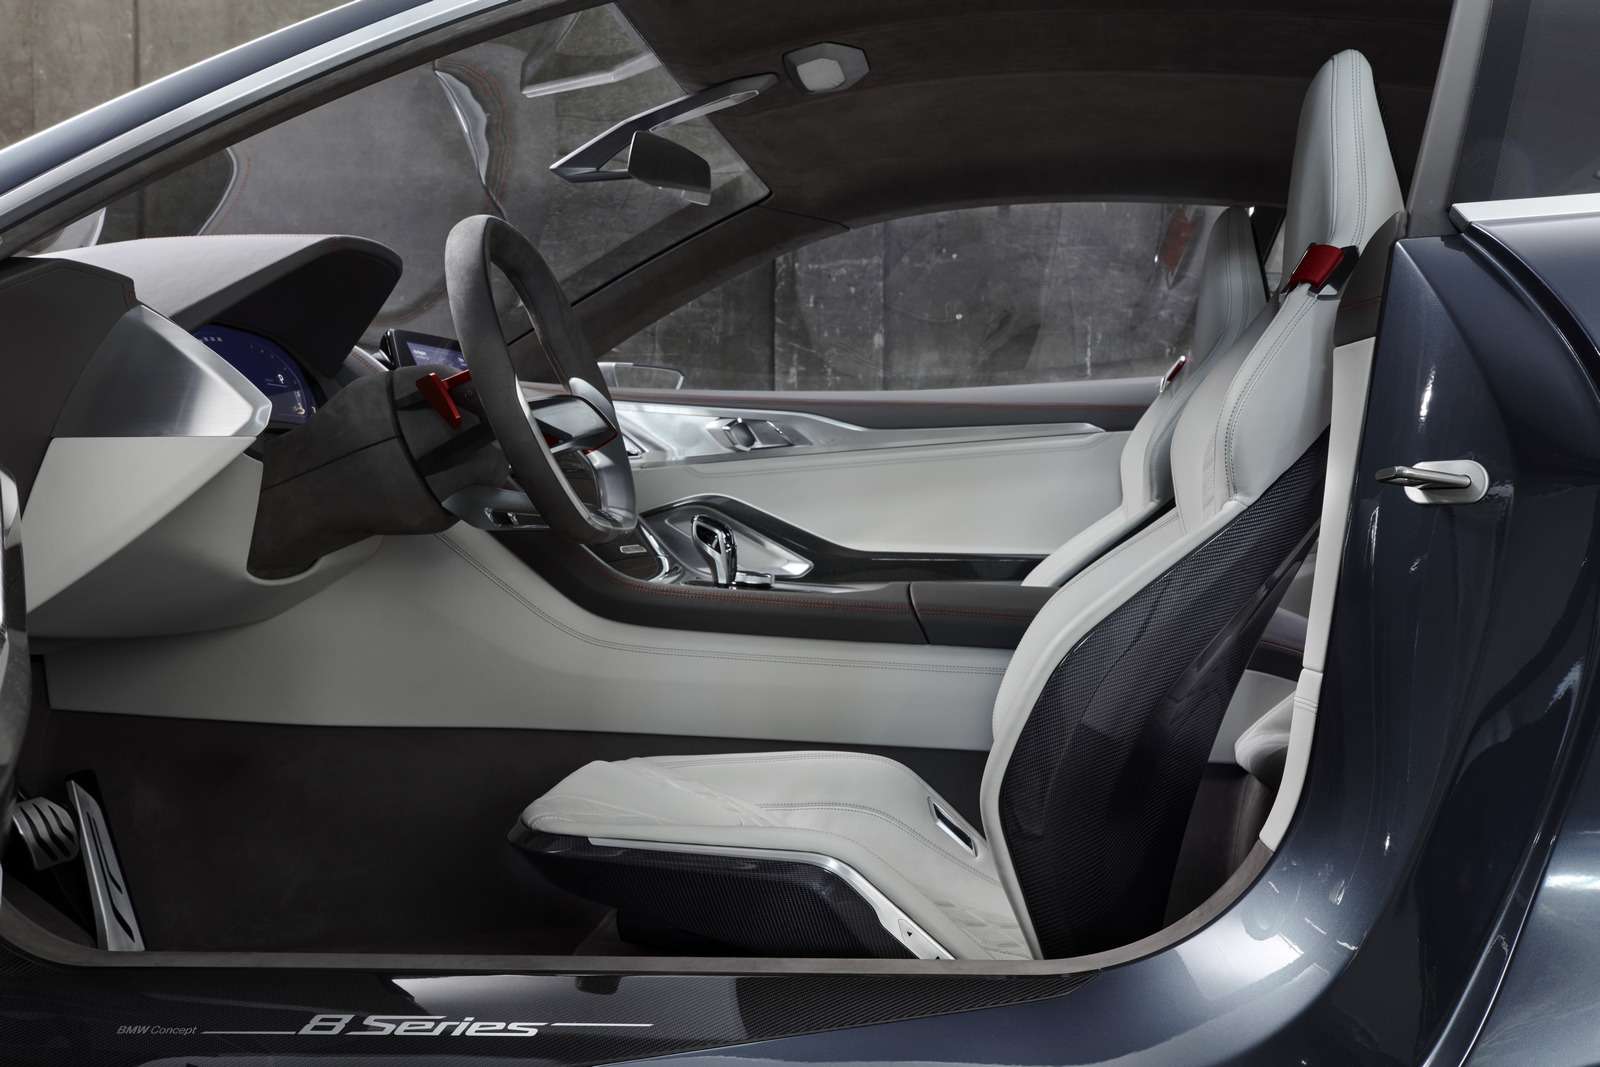 Великолепная «восьмерка»: новое купе BMW — теперь с кристаллами! — фото 756653